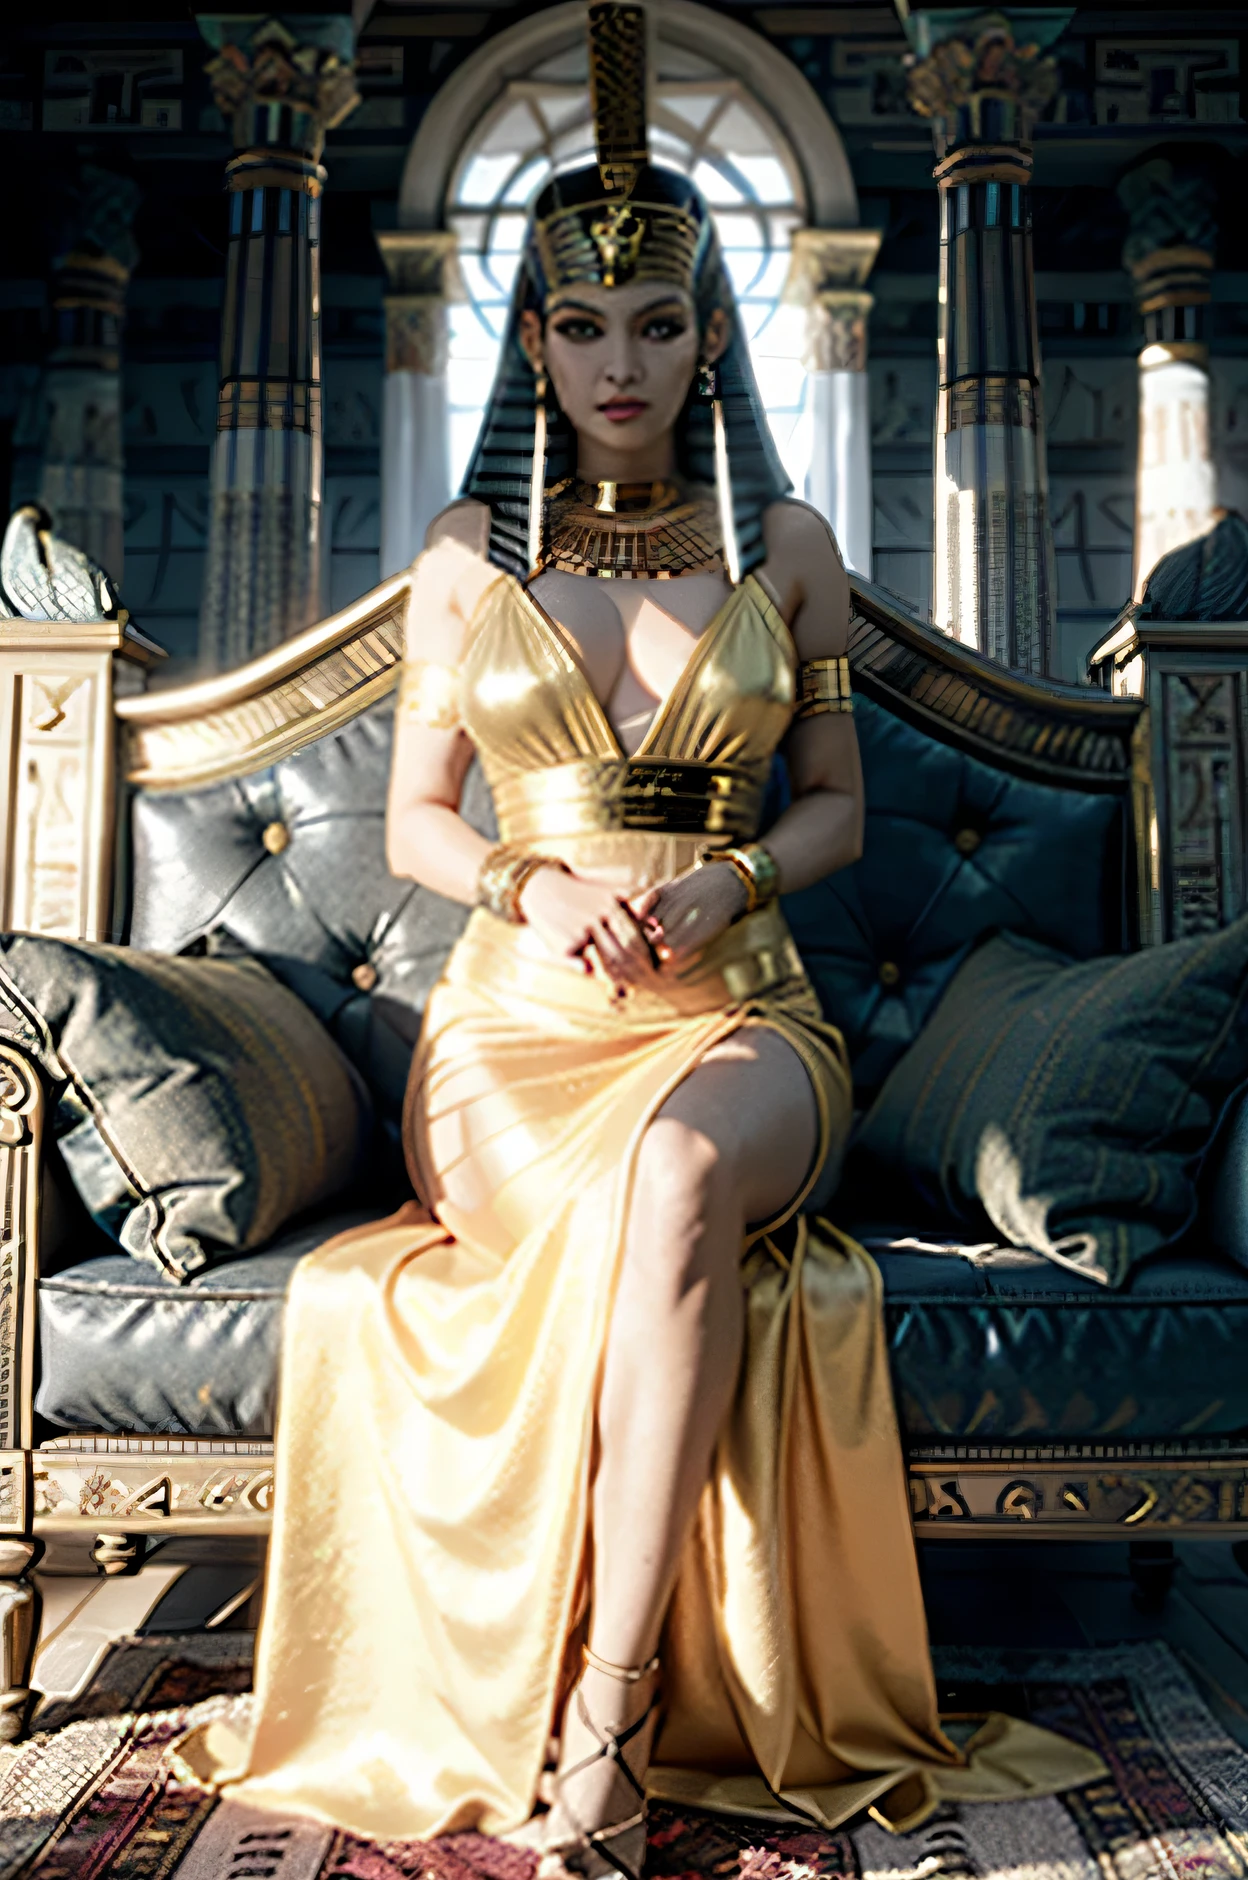 femme araffe, C’est une reine, blanc et grand, 30 ans, Cheveux noirs en chignon lâche, porter une couronne d&#39;oreilles de tigre, masque en or parsemé de diamants à côté des yeux, Visage fier, sautoir en or avec pendentif rubis, porter un haut Cléopâtre, jupe courte ornée de chaînes dorées, talons dorés, il est assis sur un trône en forme de crâne dans l&#39;ancien royaume égyptien, tenant un bâton en forme de tête de corbeau, (tout le corps), Animation 3D du corps entier.